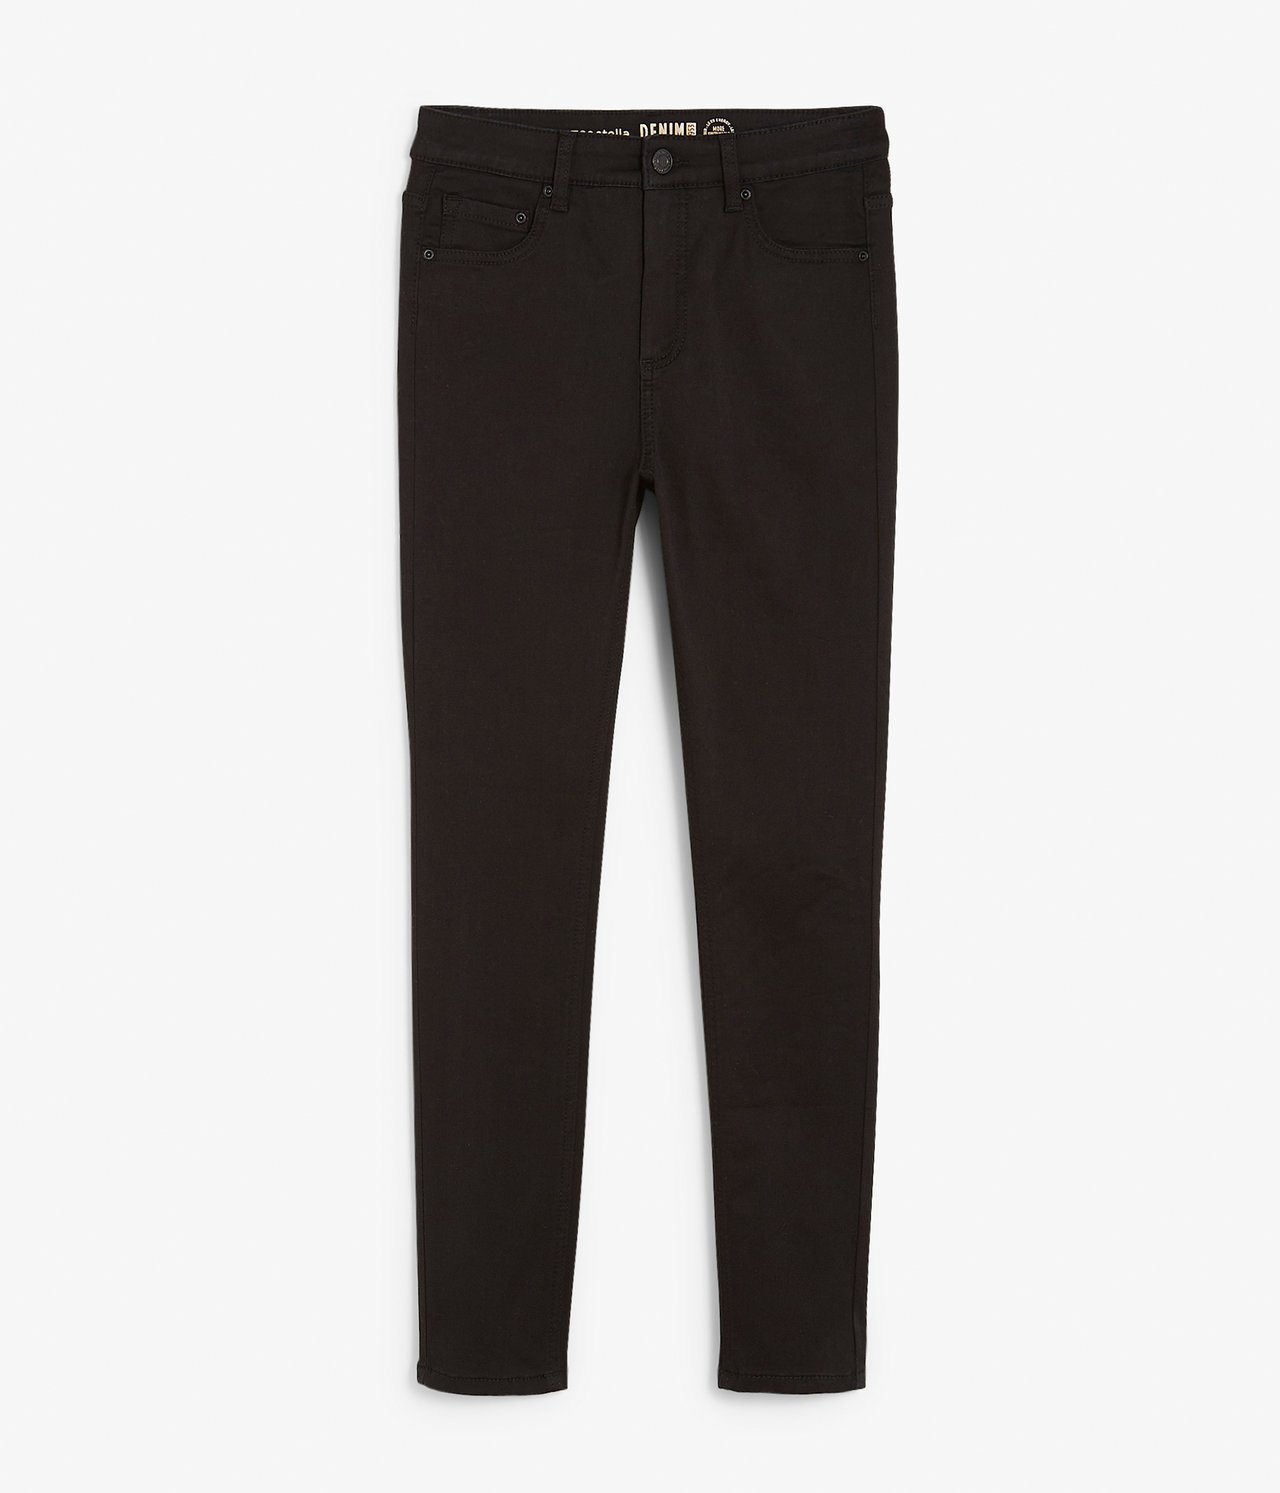 Super slim jeans short leg Svart - null - 4